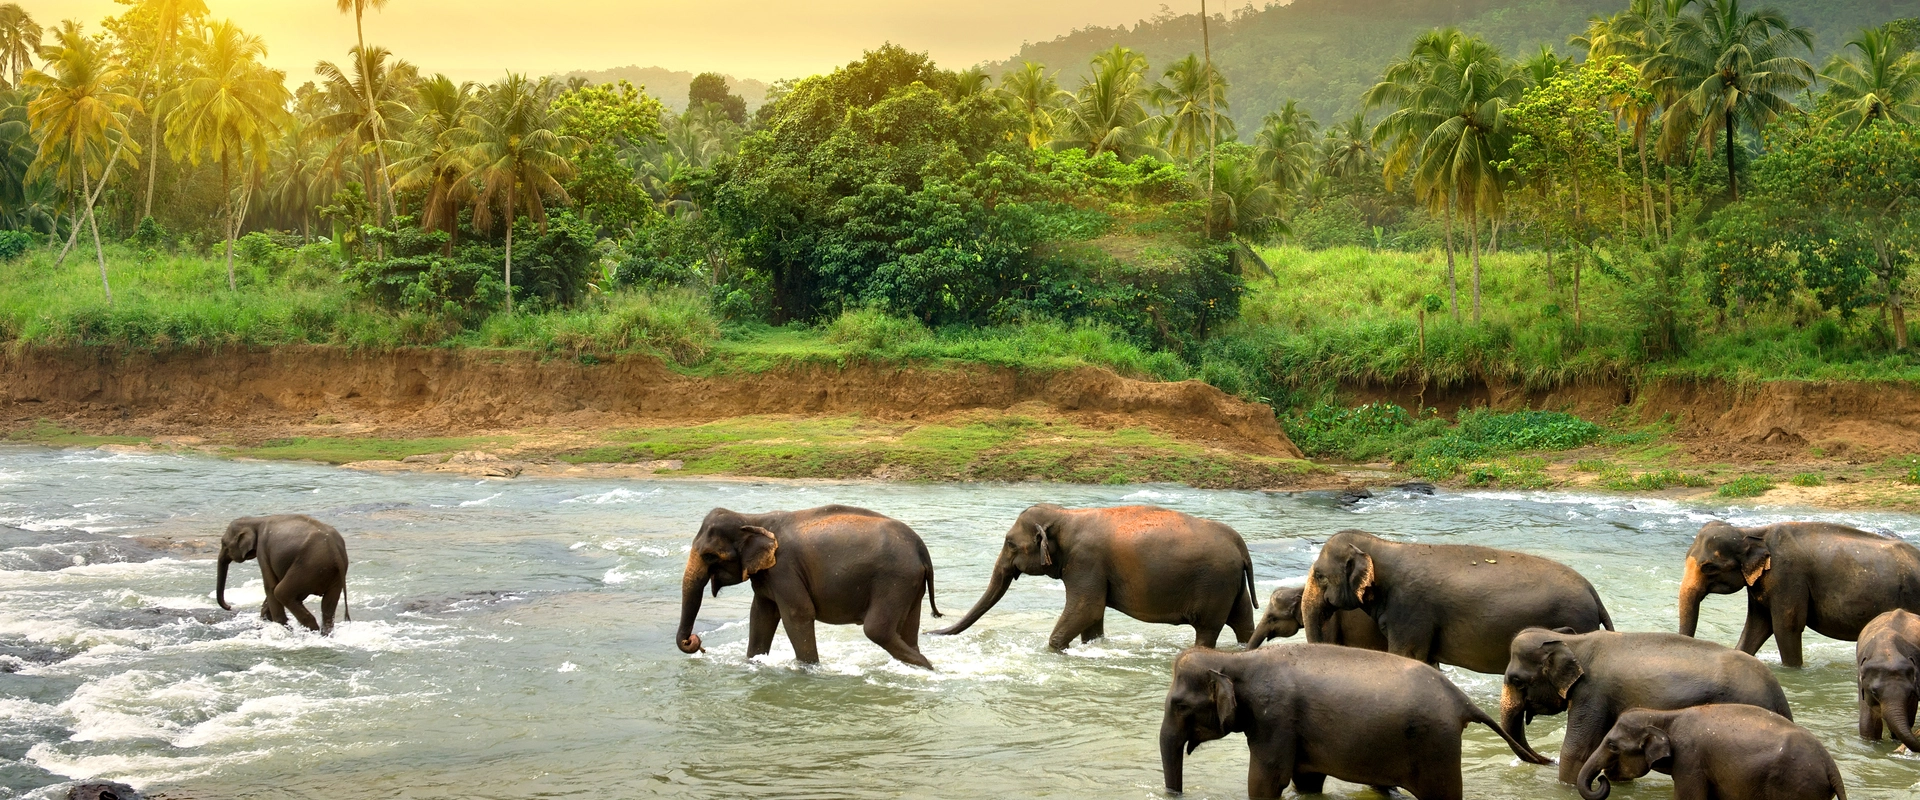 sri lanka maldives elephants fleuve